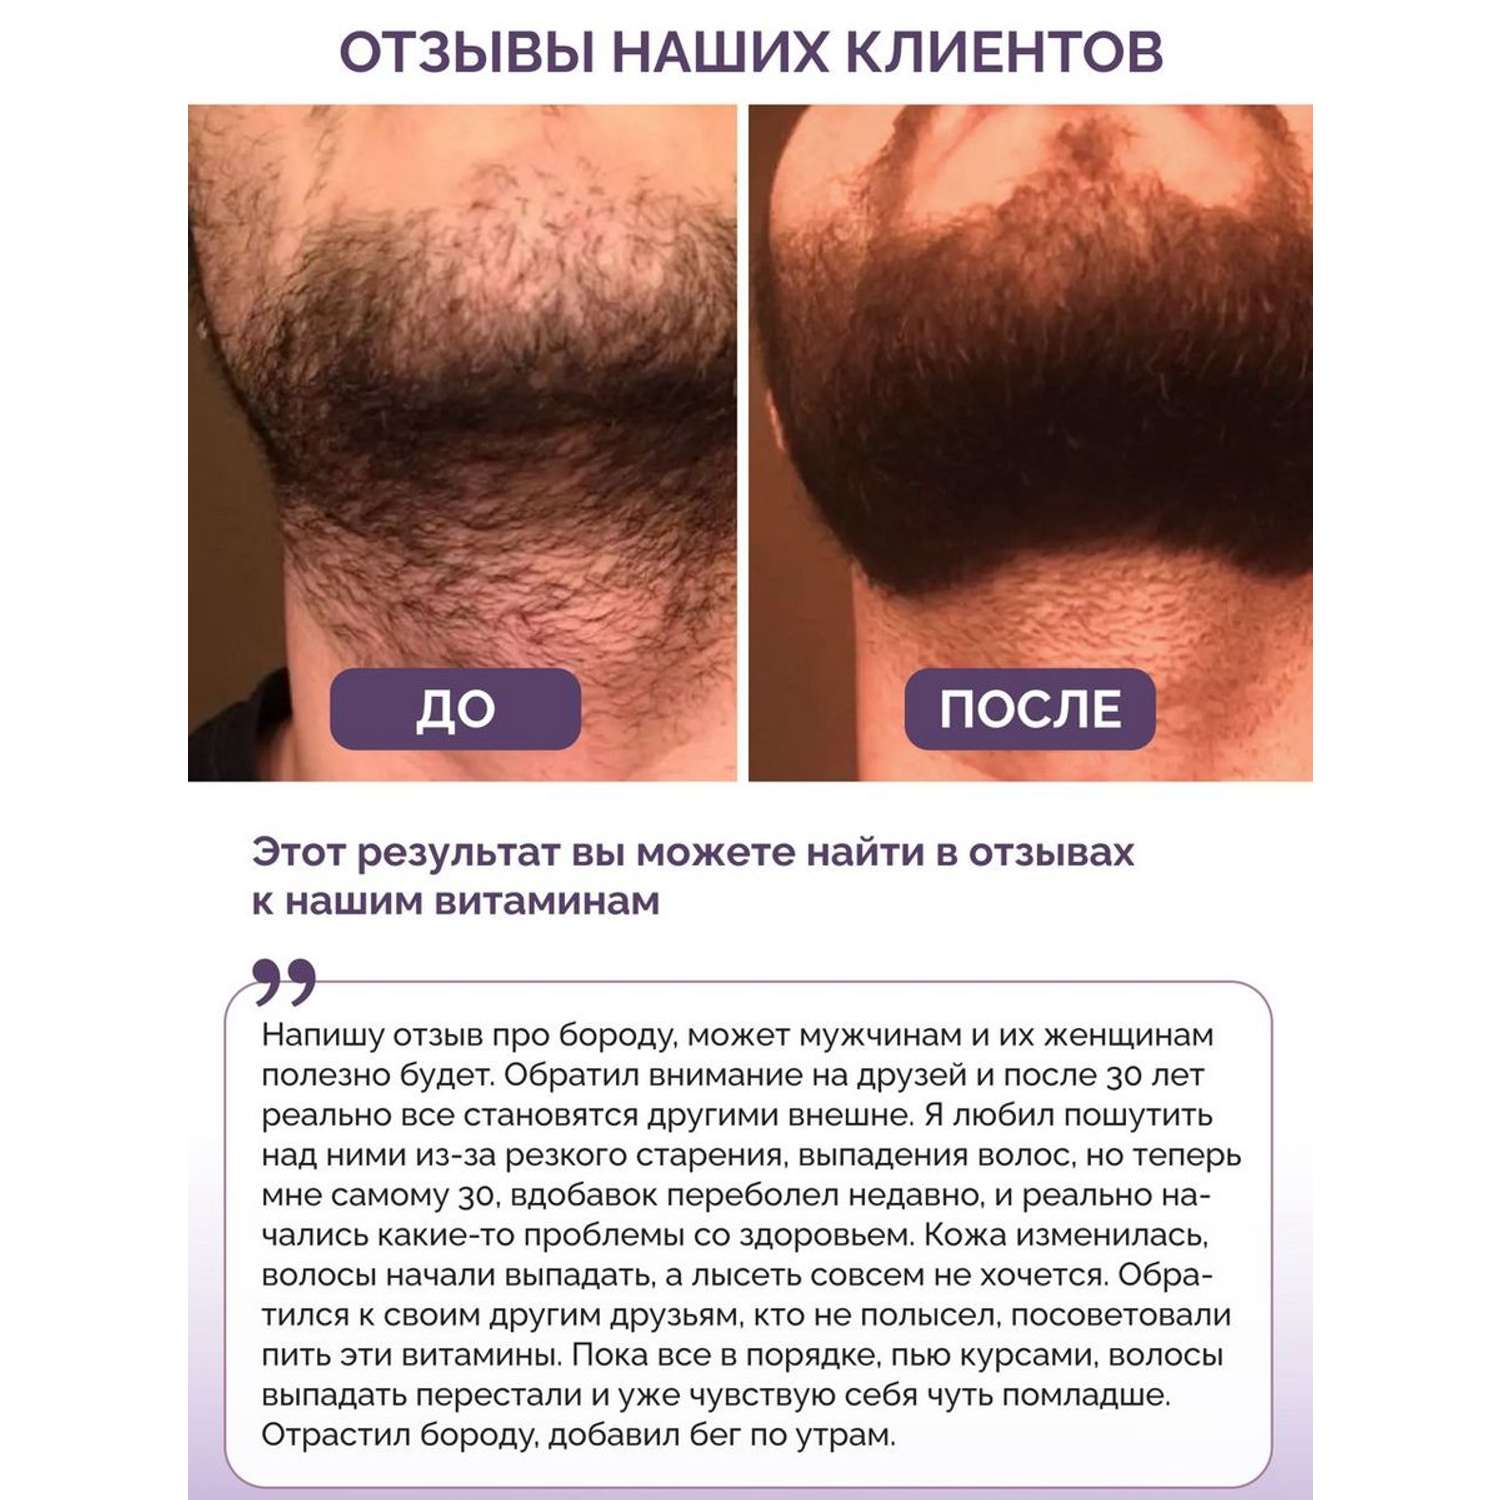 Витамины для волос кожи ногтей BIOTTE hair nails skin витаминно-минеральный комплекс БАД 60 капсул - фото 3